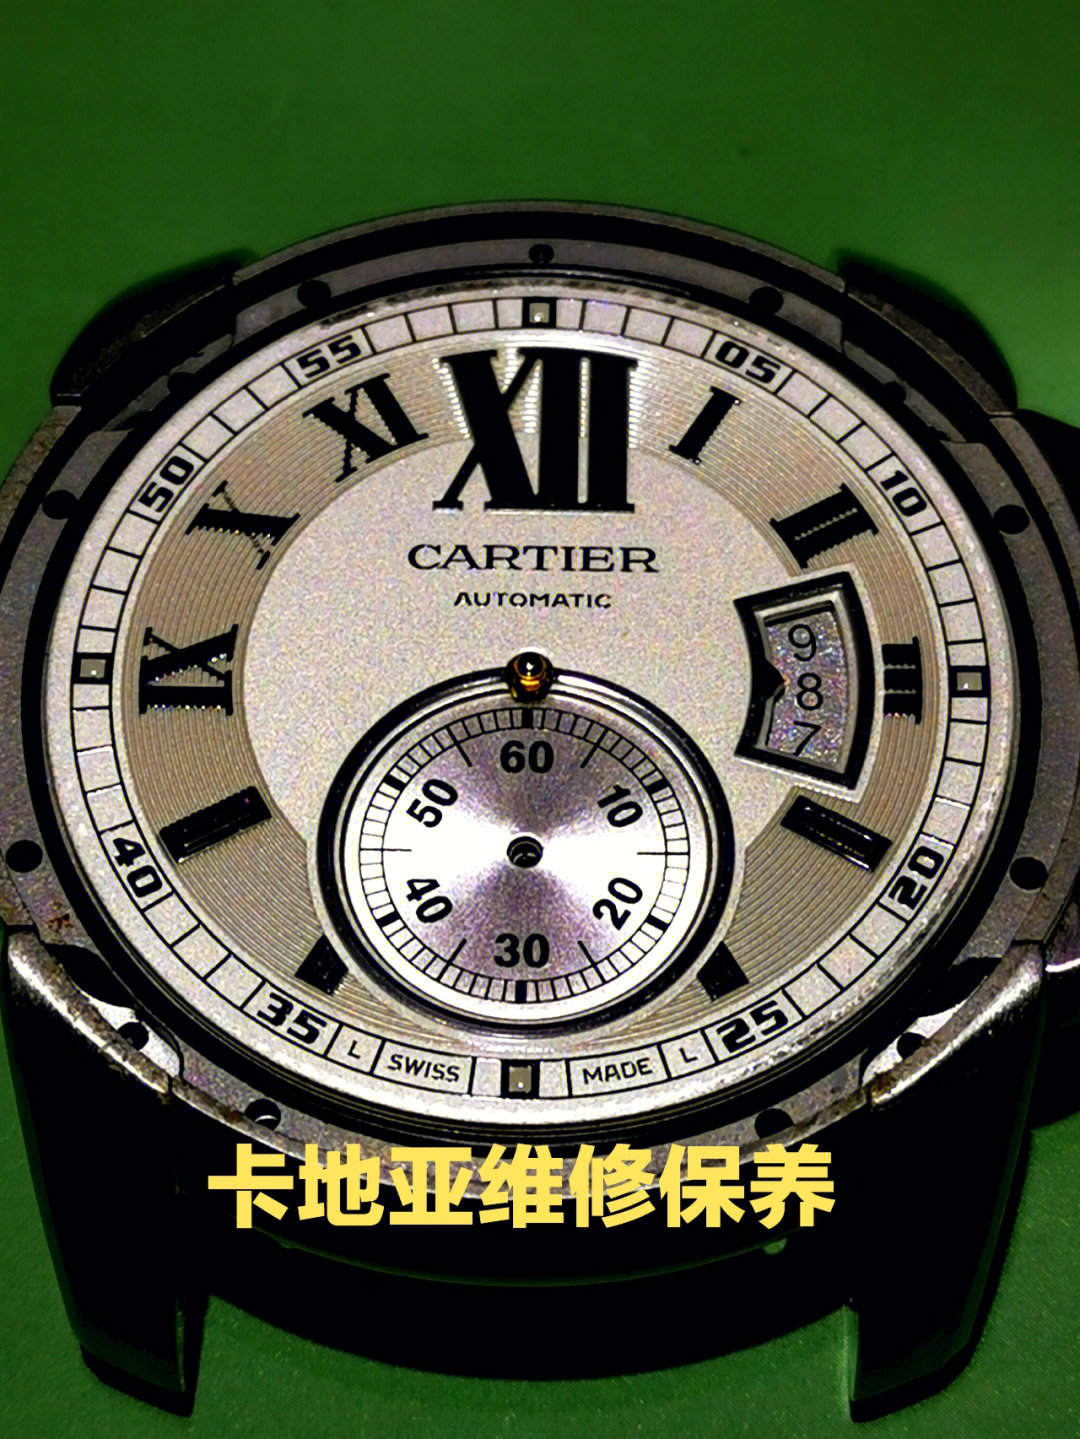 今天给大家看一个卡地亚的保养维护,该款手表搭载的是卡地亚自产的